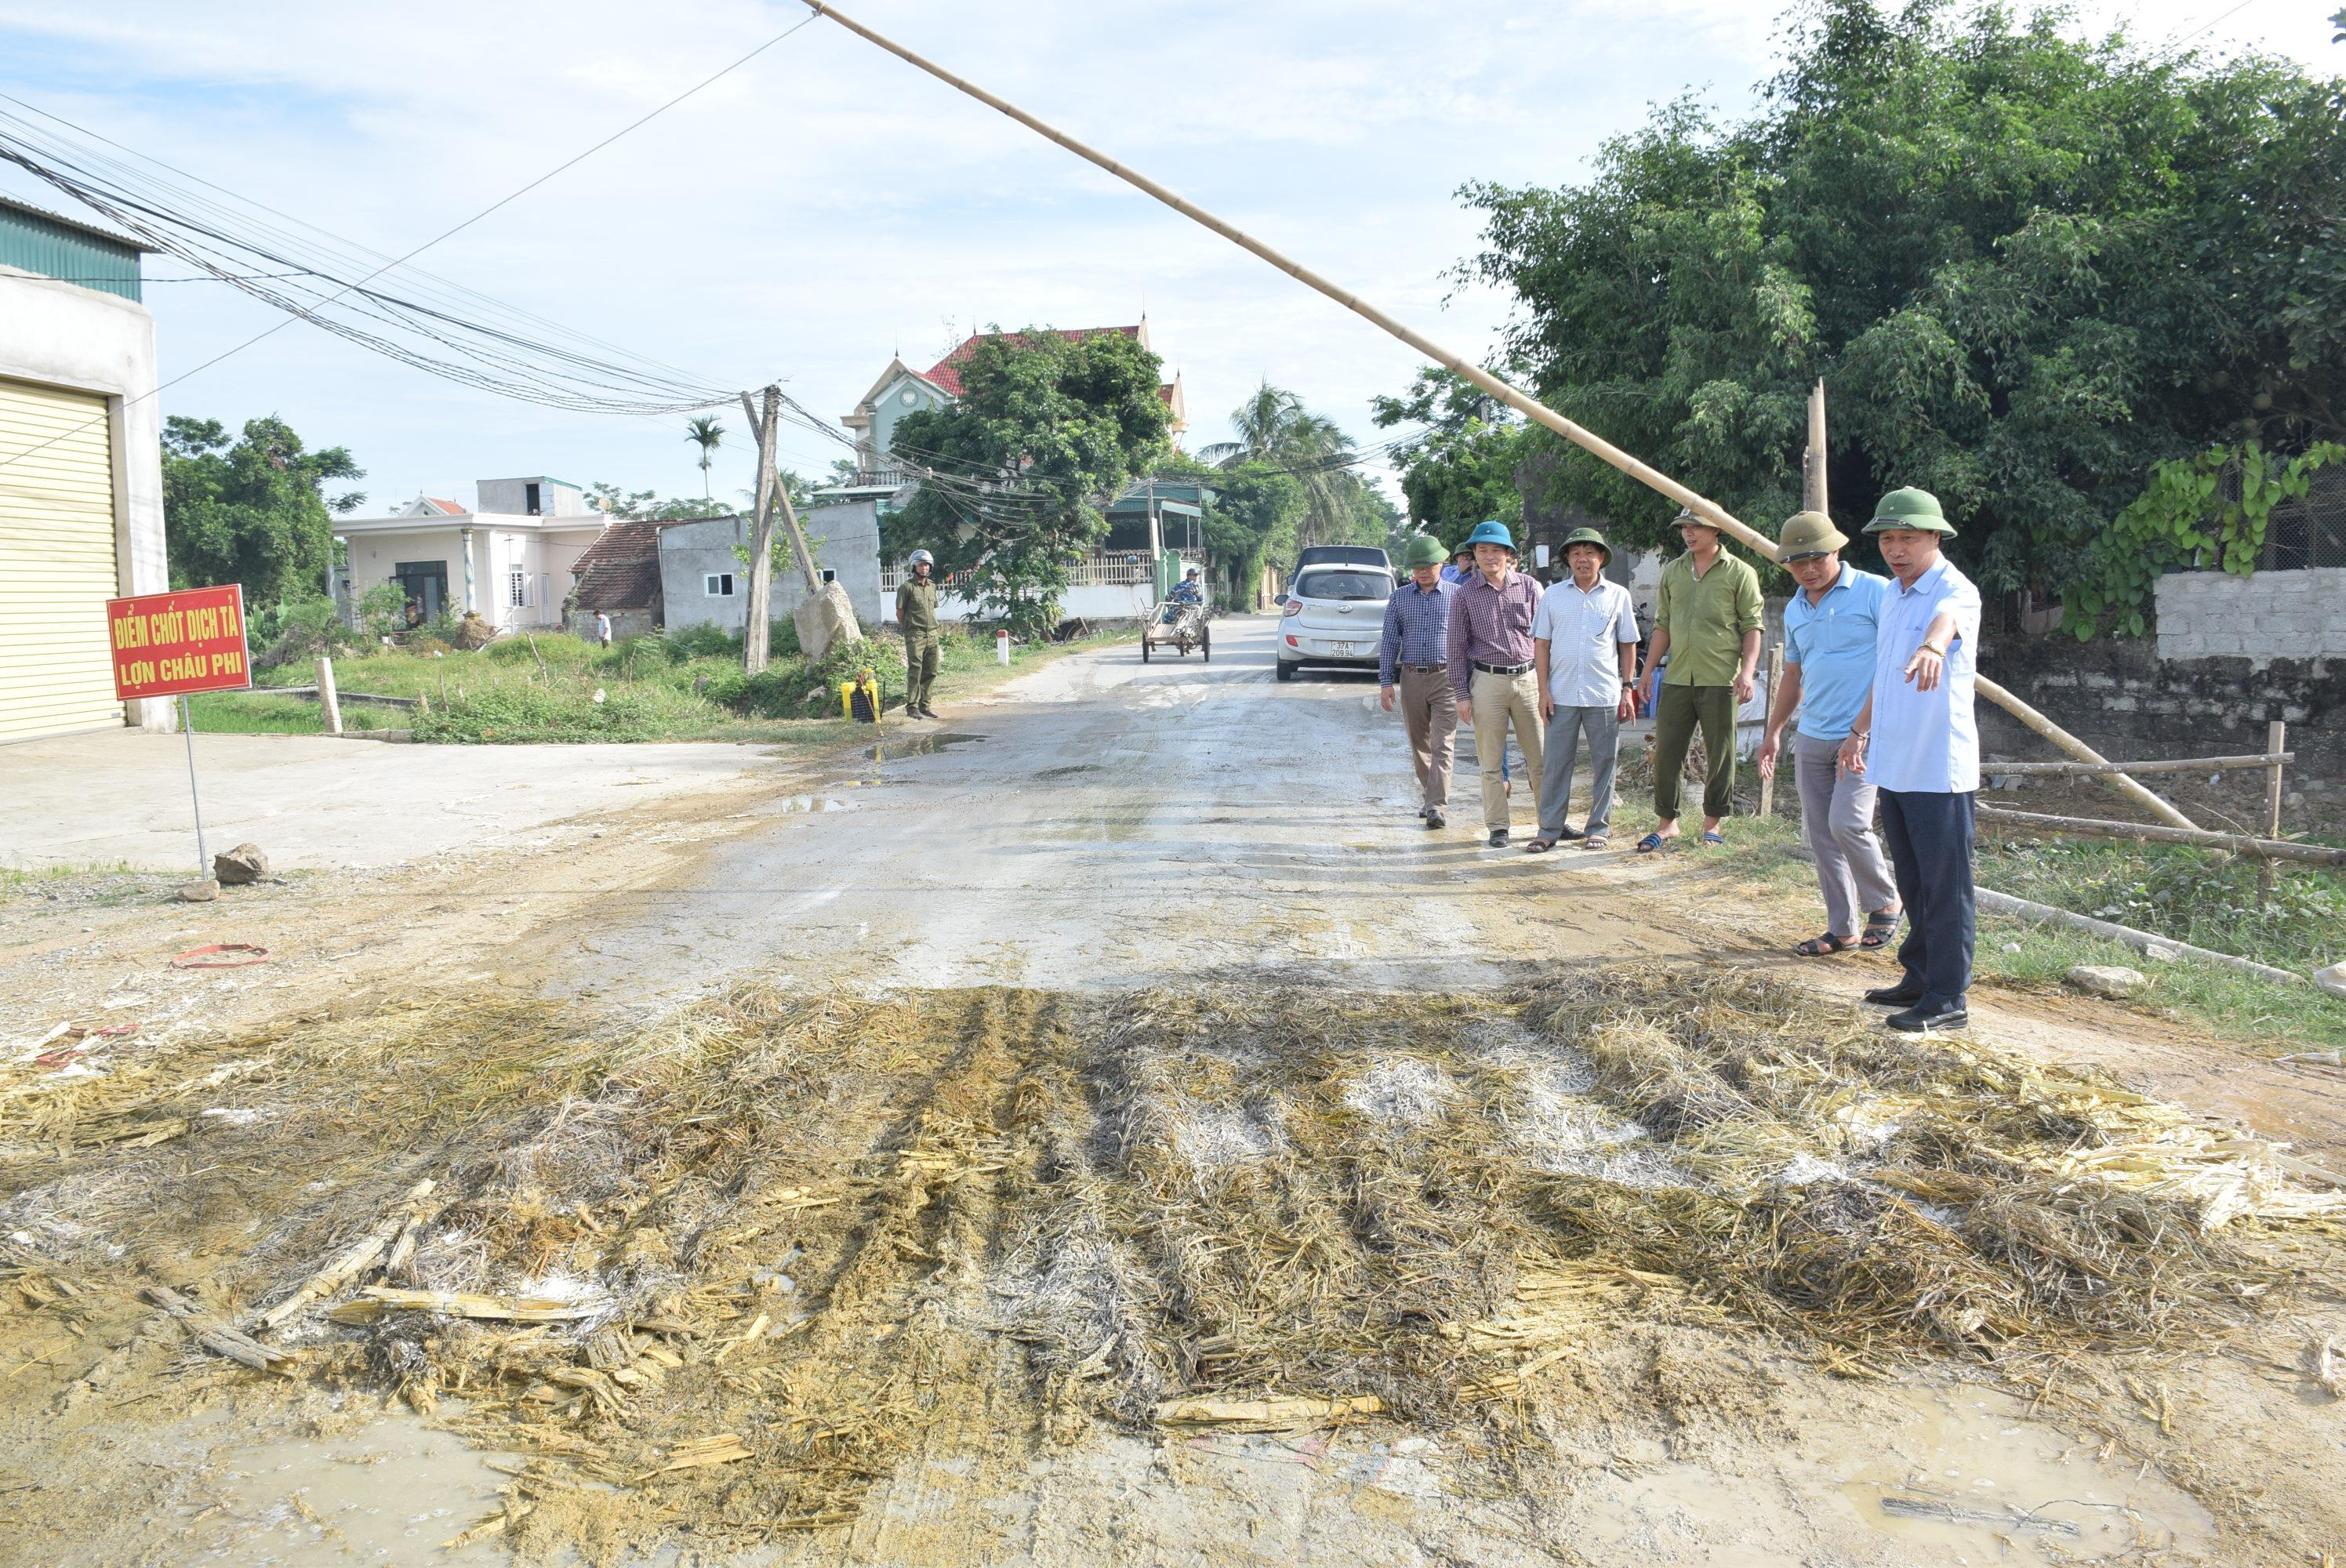 Đoàn kiểm tra chốt chặn trên địa bàn xã Phú Thành cho thấy, hố khử trùng chưa đảm bảo quy định. Ảnh: Xuân Hoàng